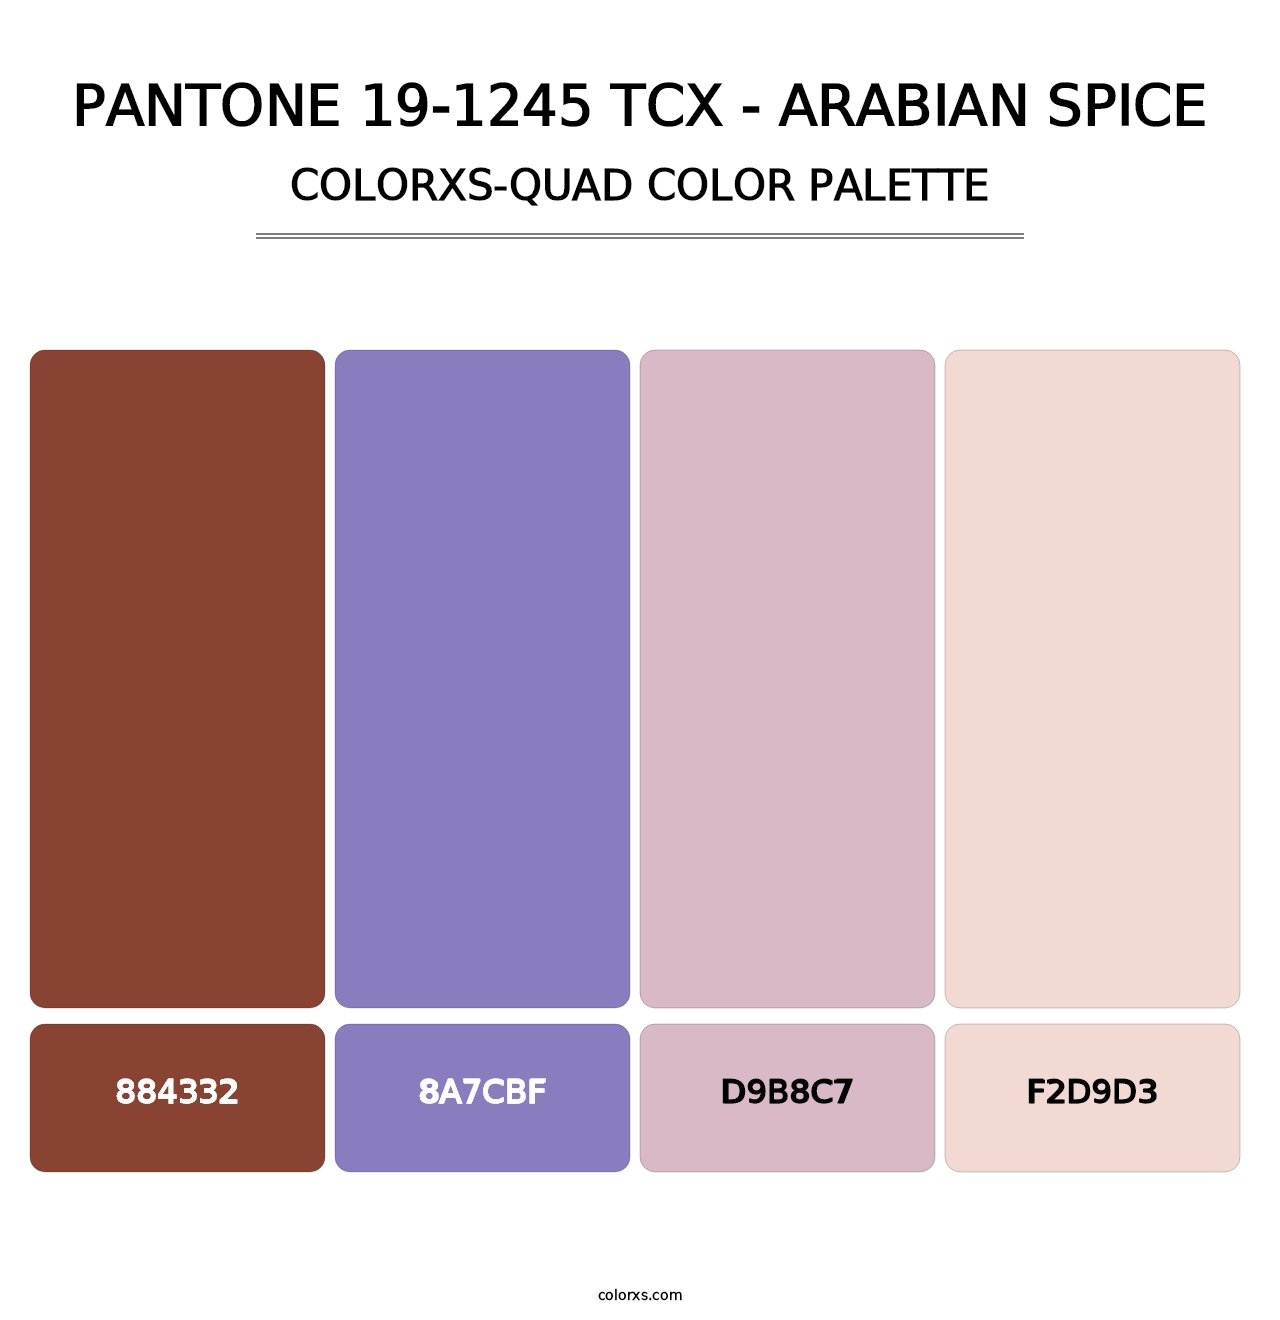 PANTONE 19-1245 TCX - Arabian Spice - Colorxs Quad Palette